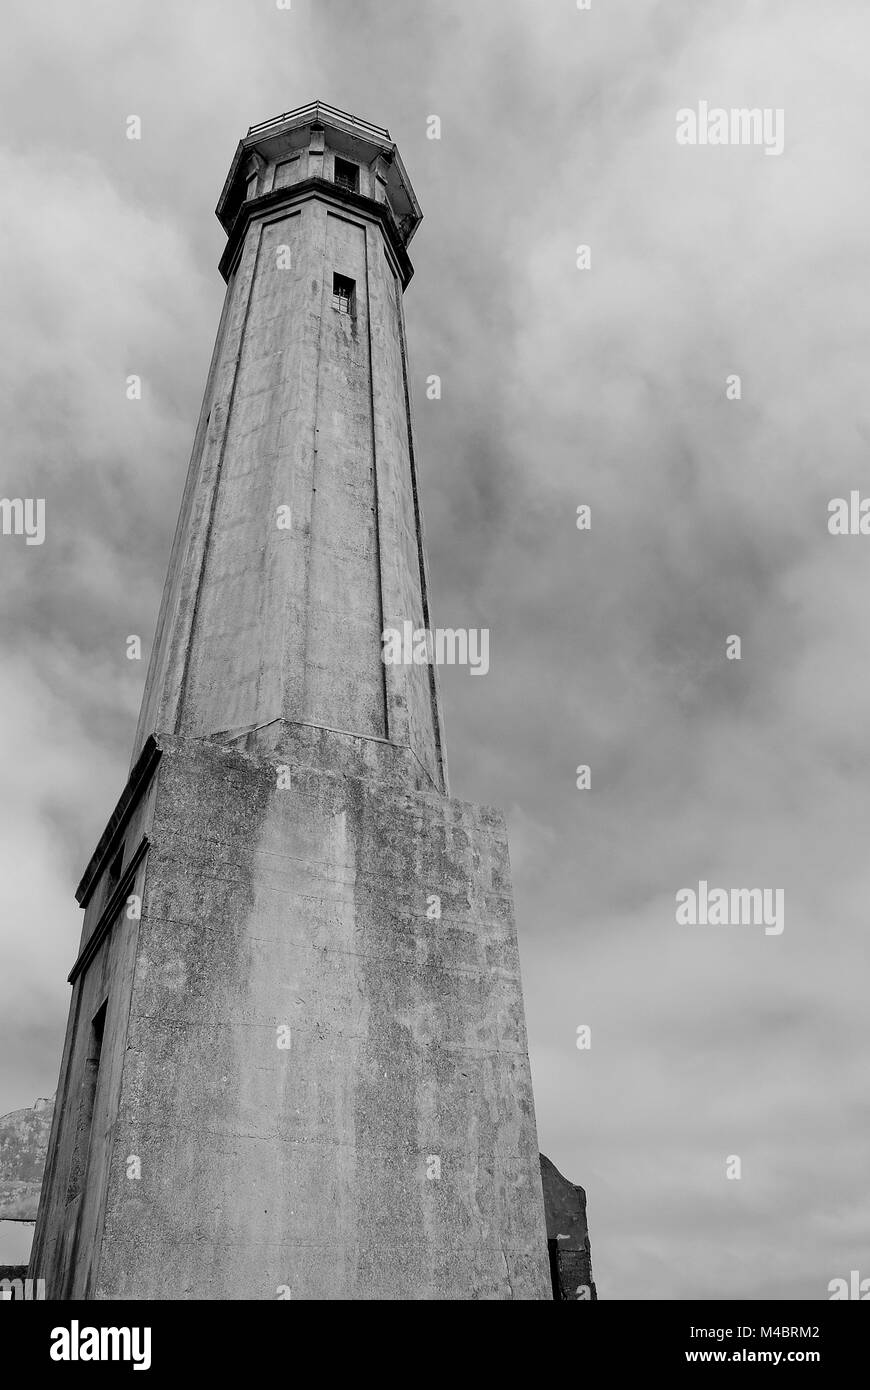 L'île d'Alcatraz, Tour de Garde, ciel nuageux, Prison, Bay Area, à San Francisco, Californie Banque D'Images